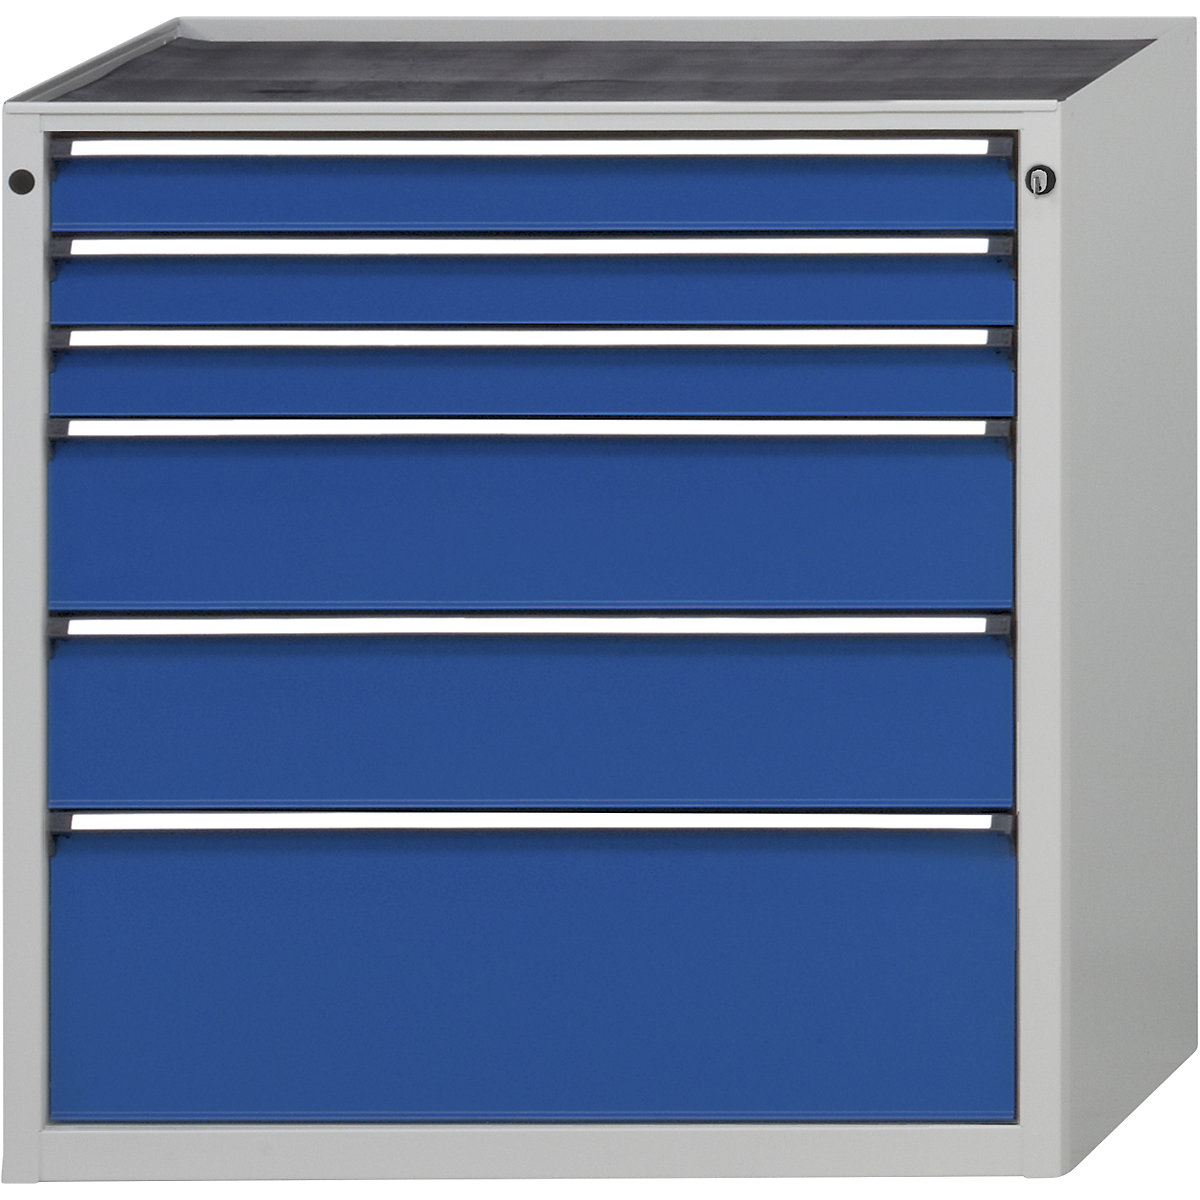 Armoire à tiroirs sans plateau – ANKE, largeur 910 mm, charge max. tiroirs 200 kg, 6 tiroirs, façade bleu gentiane-8